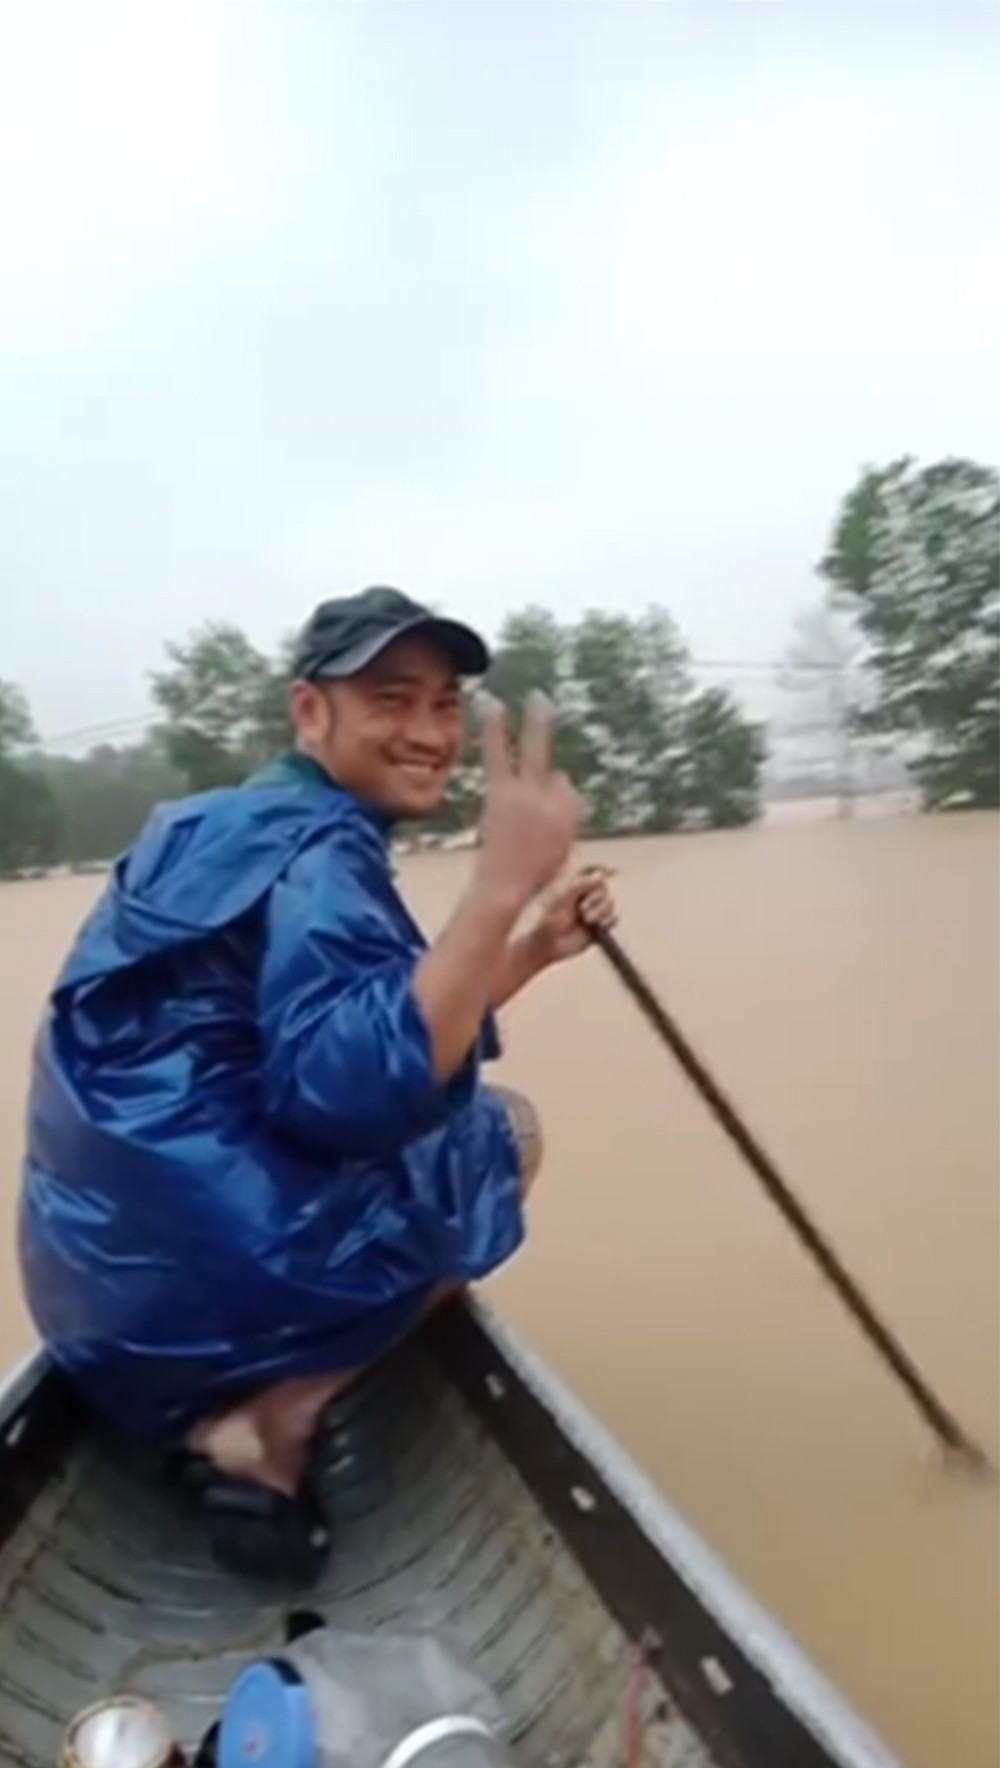  
Anh Nam đã hỗ trợ mọi người trong đợt bão lũ vừa qua. (Ảnh cắt từ clip)